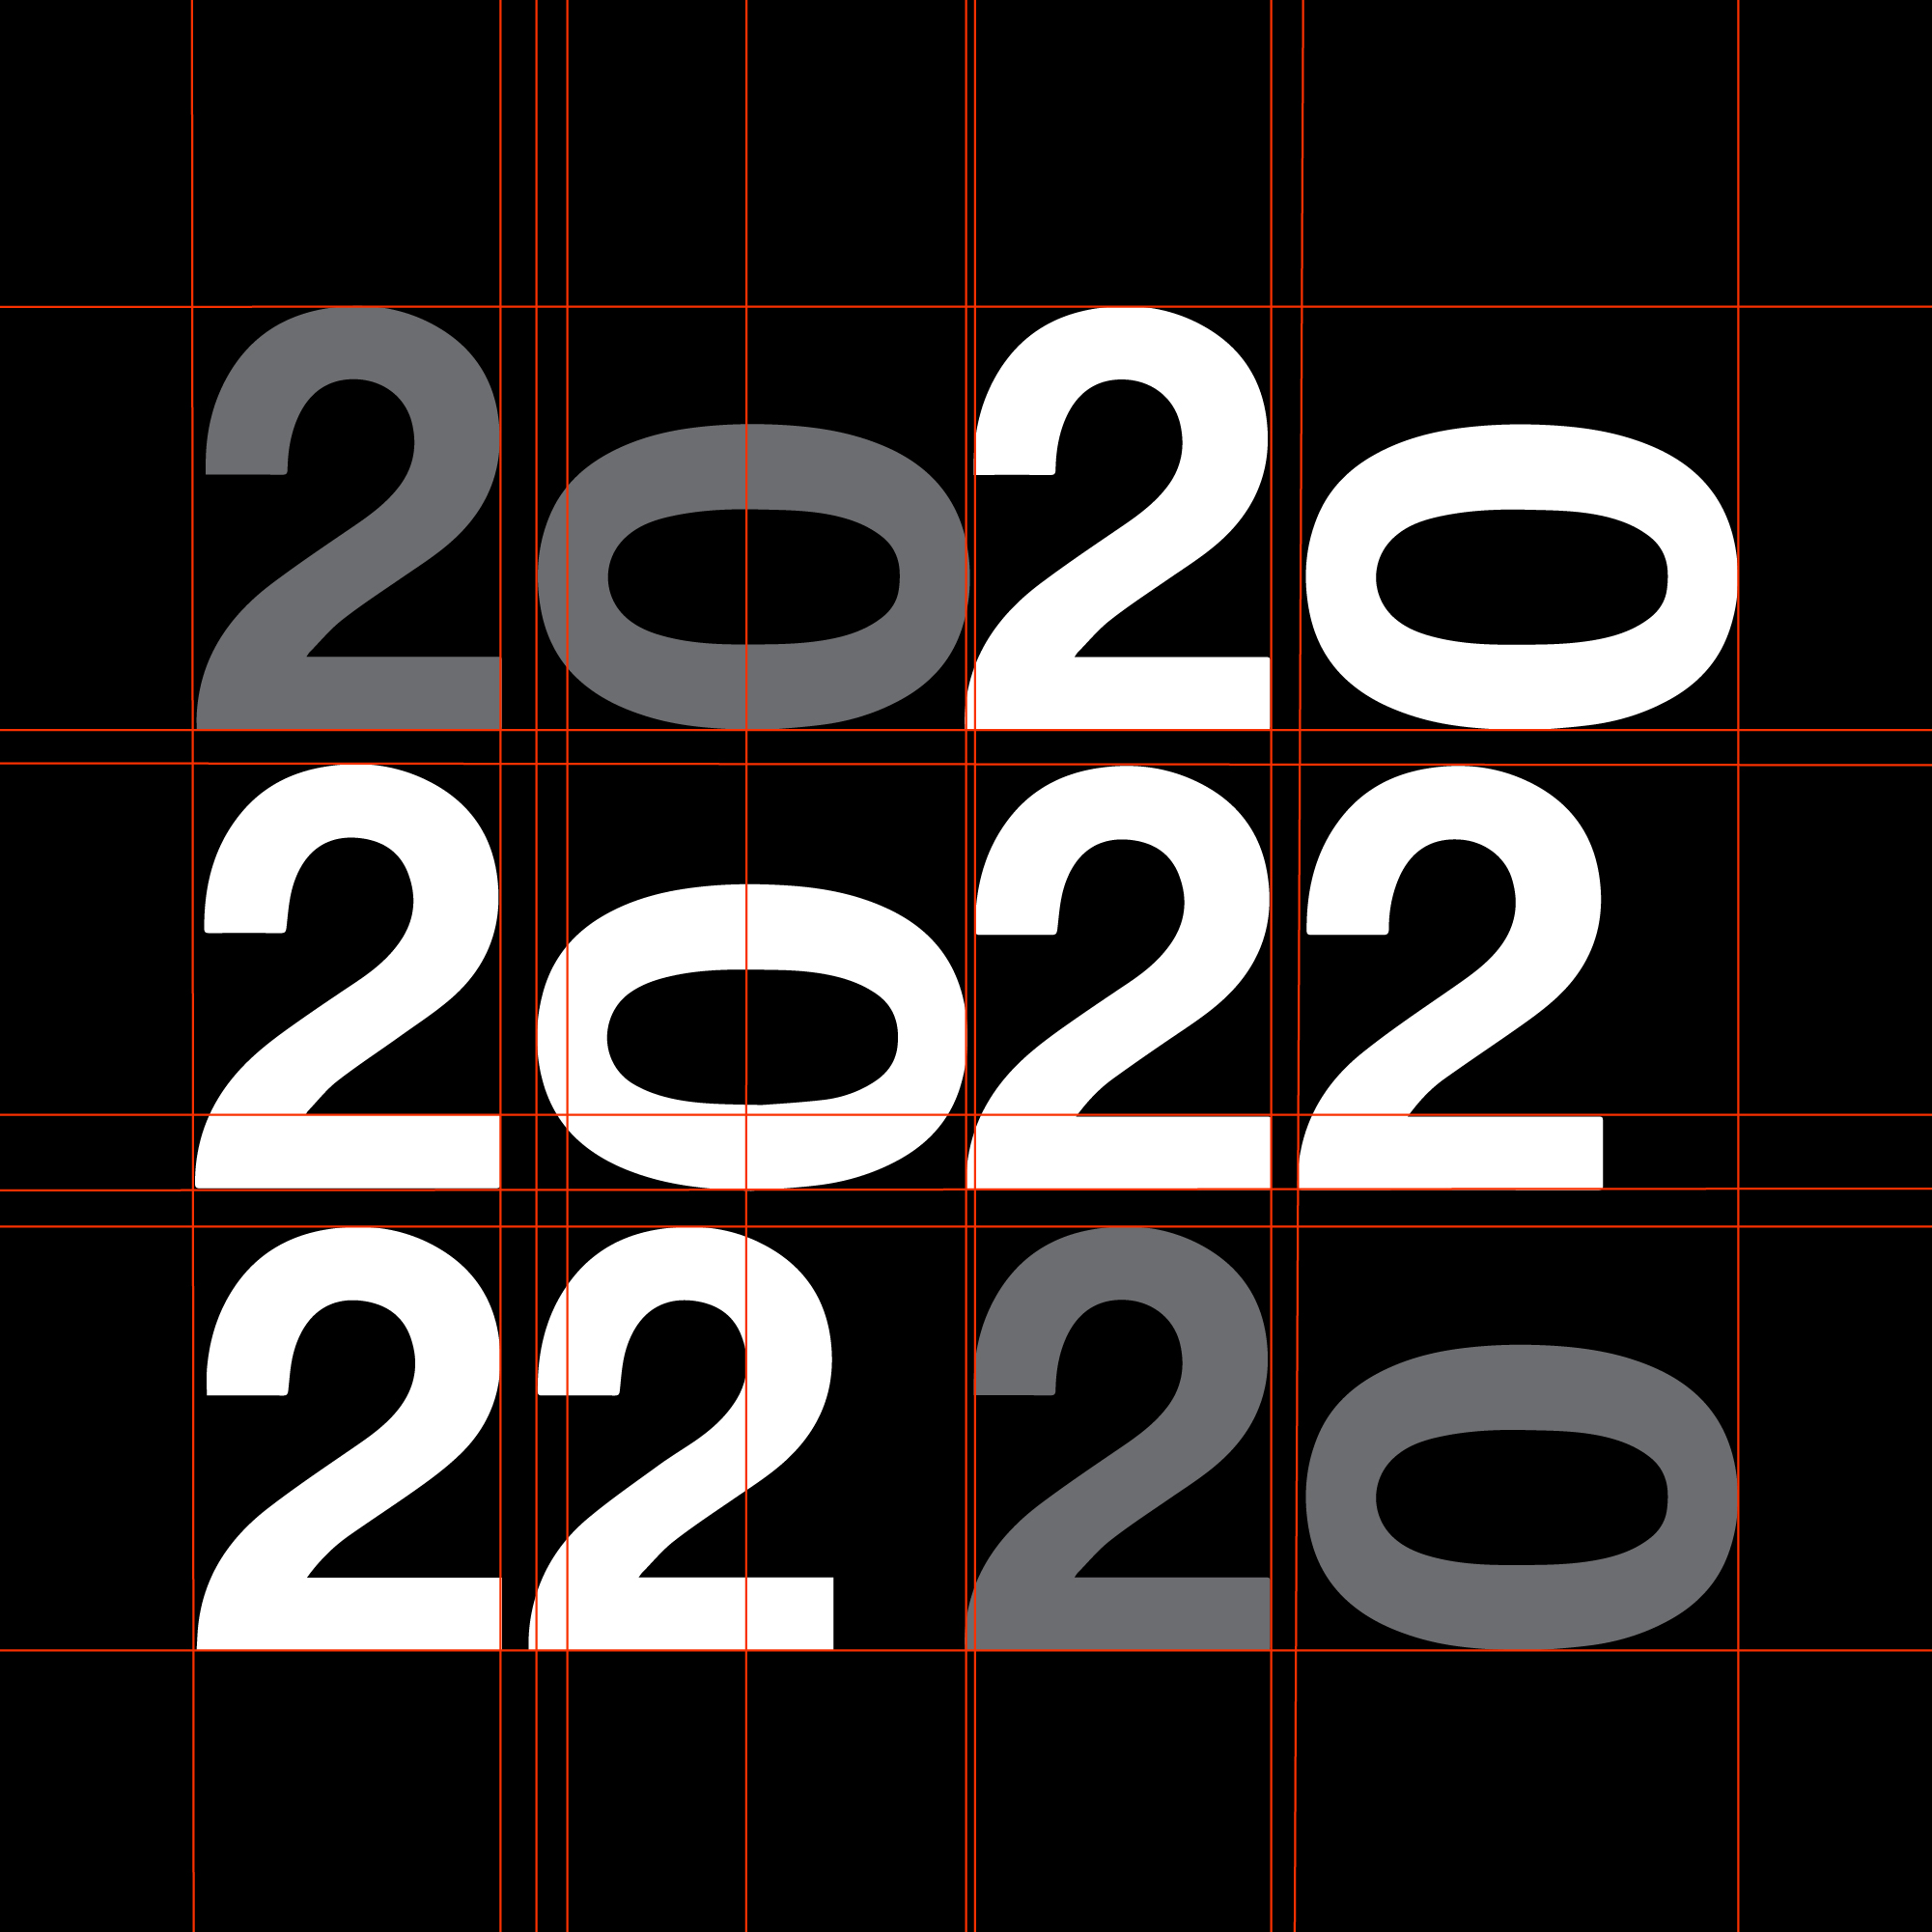 2022 - grelha (2022)